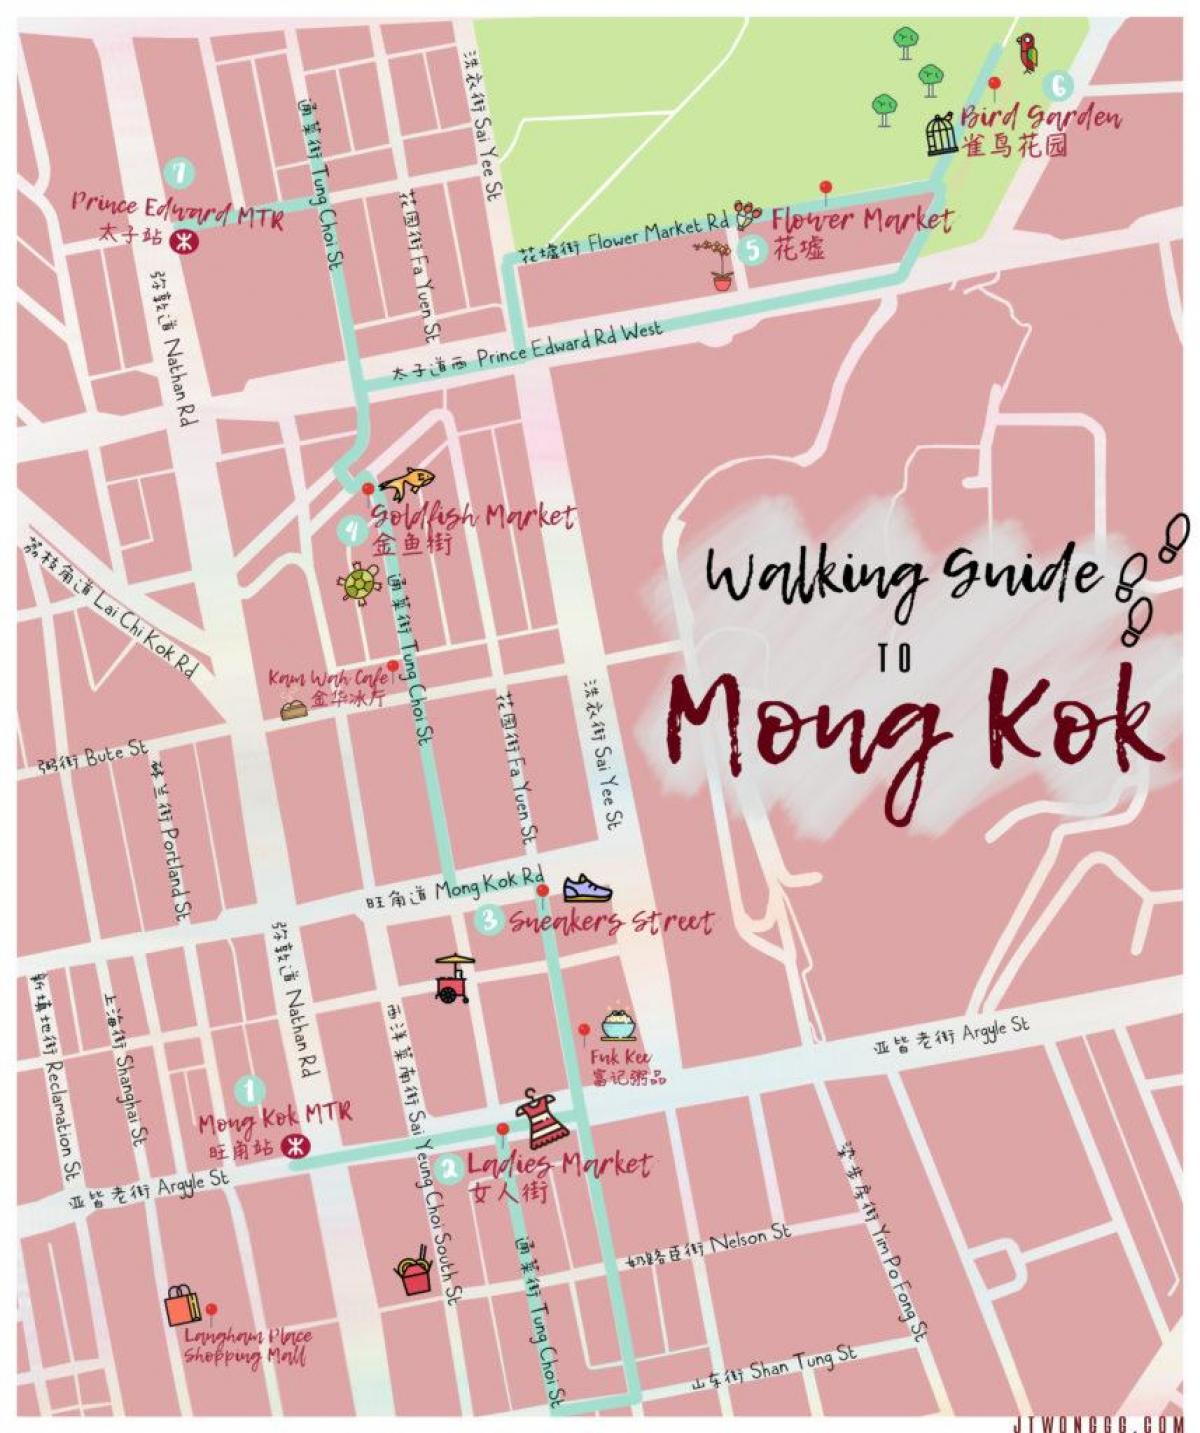 خريطة مونغ كوك في هونغ كونغ